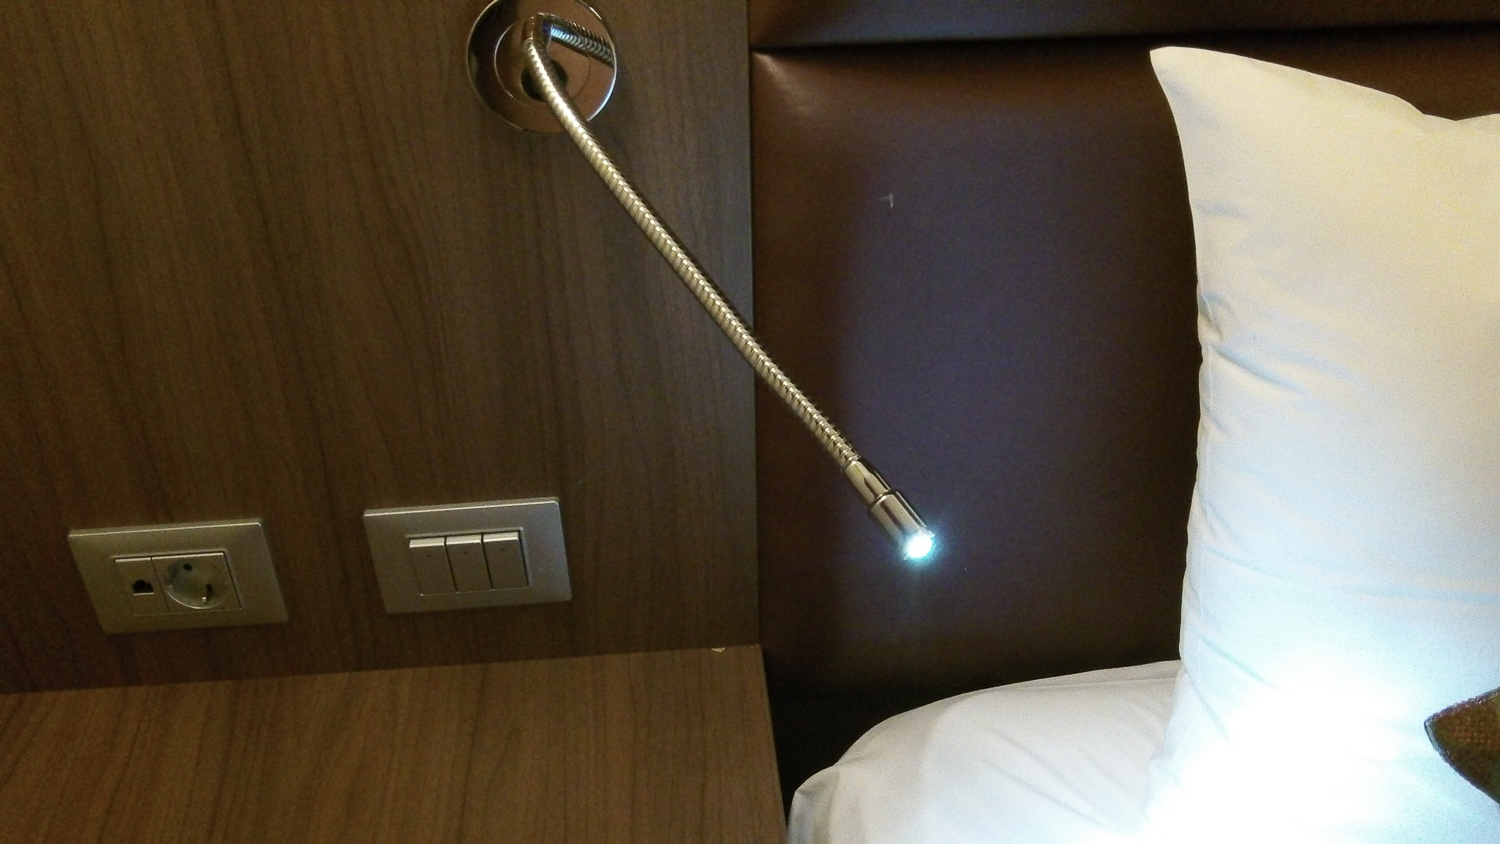 светильник гибкий на изголовье кровати